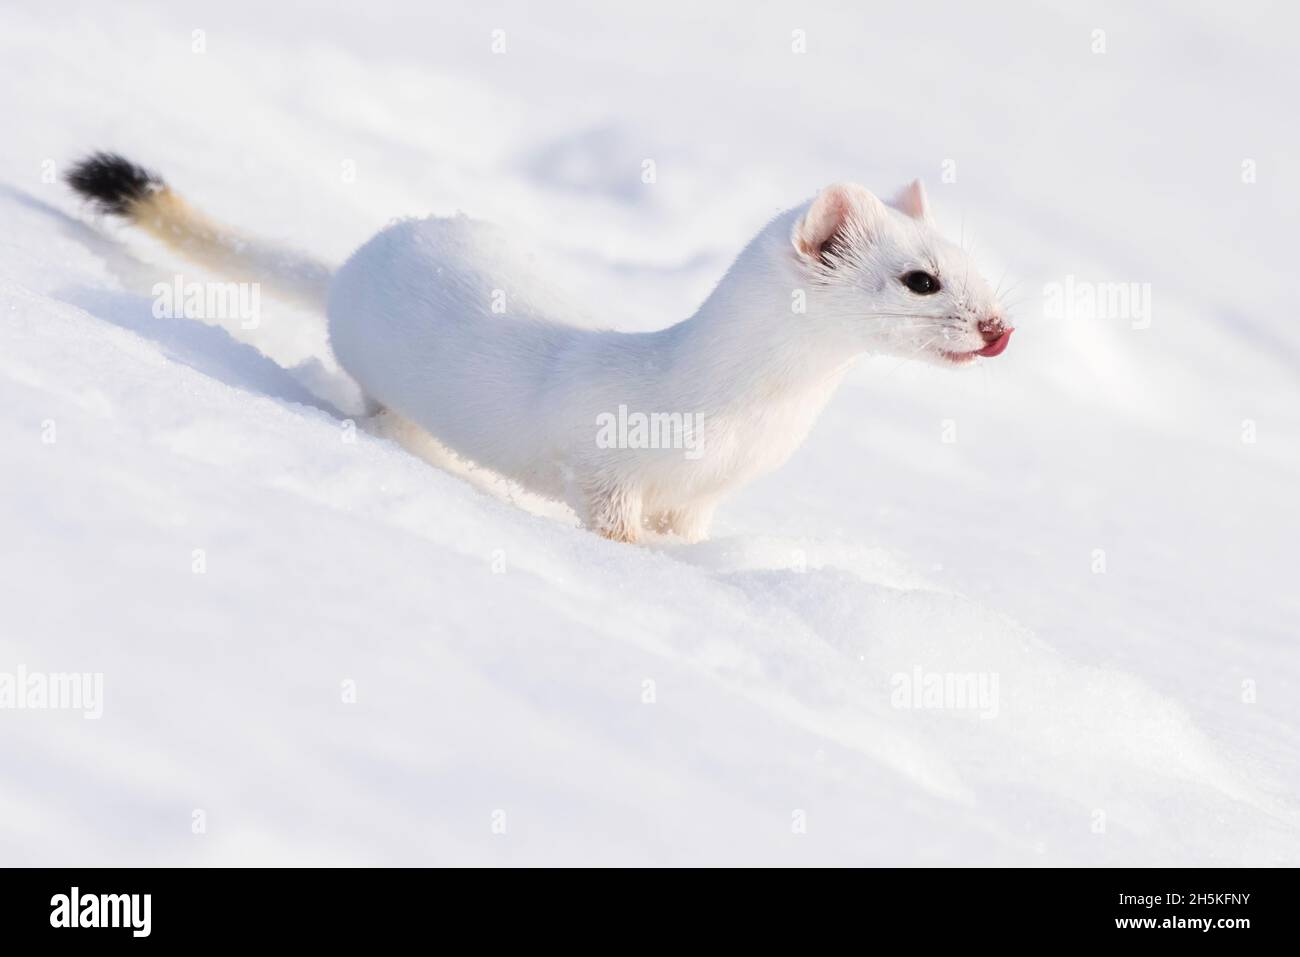 Un weasel de cola corta (Mustela erminea) camuflado en su abrigo blanco de invierno, con vistas al paisaje cubierto de nieve Foto de stock